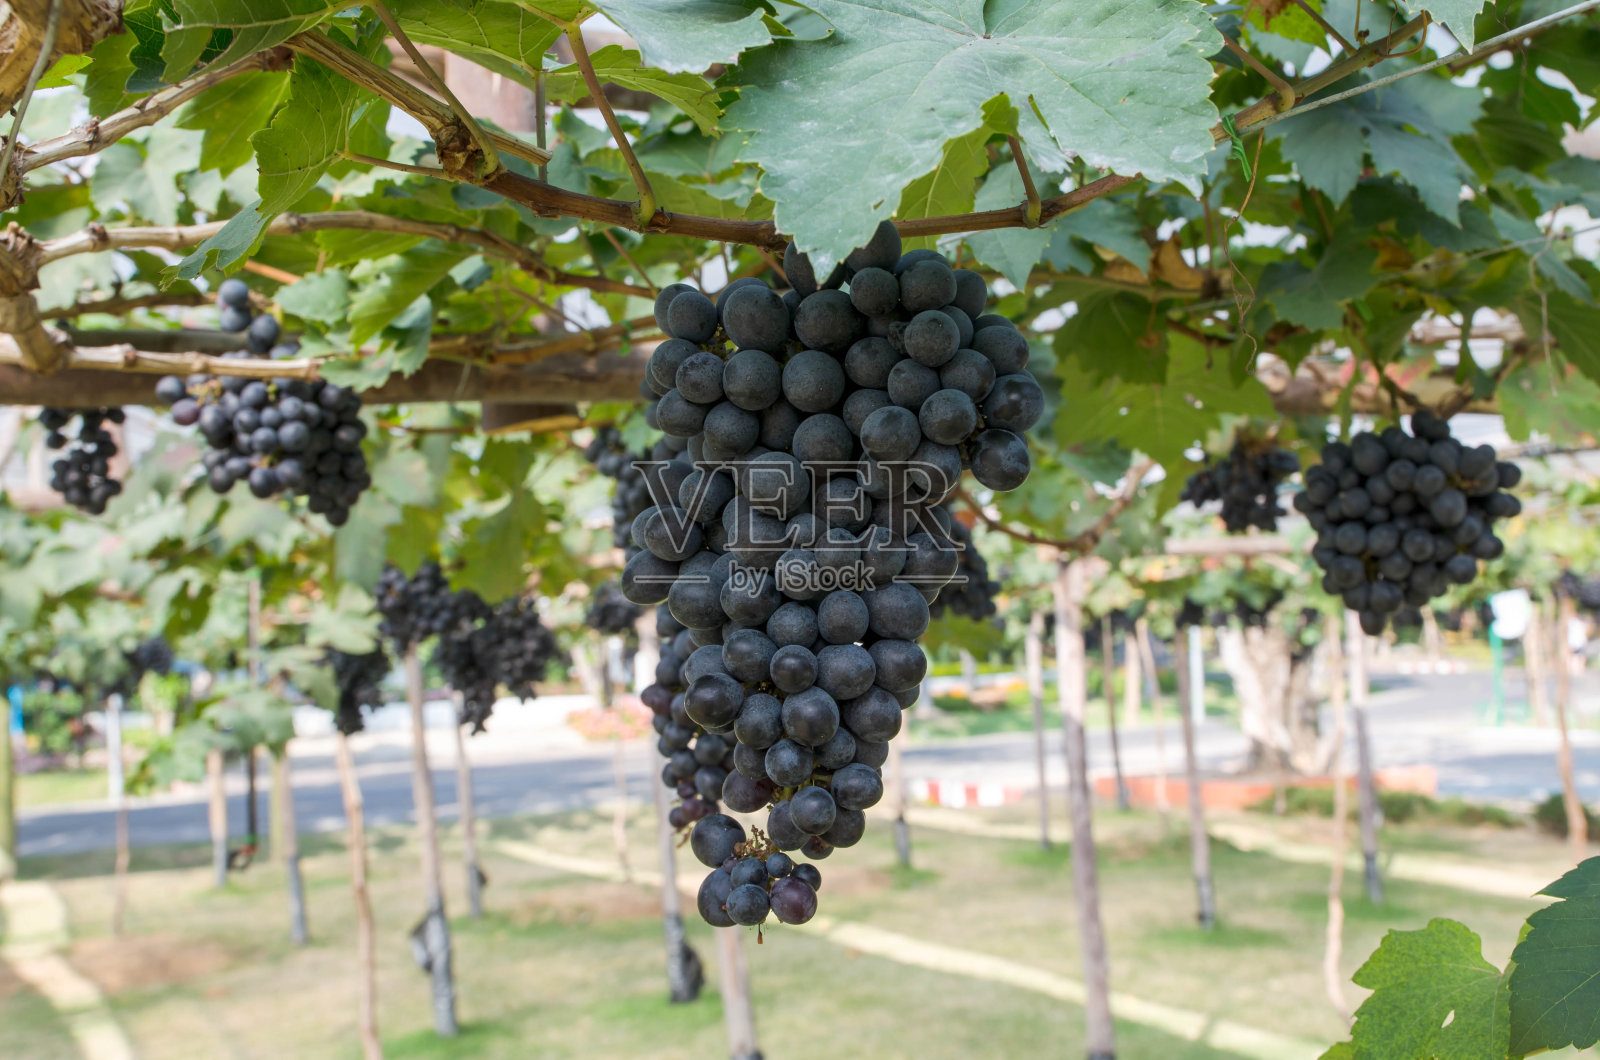 一串串葡萄挂在红酒上照片摄影图片